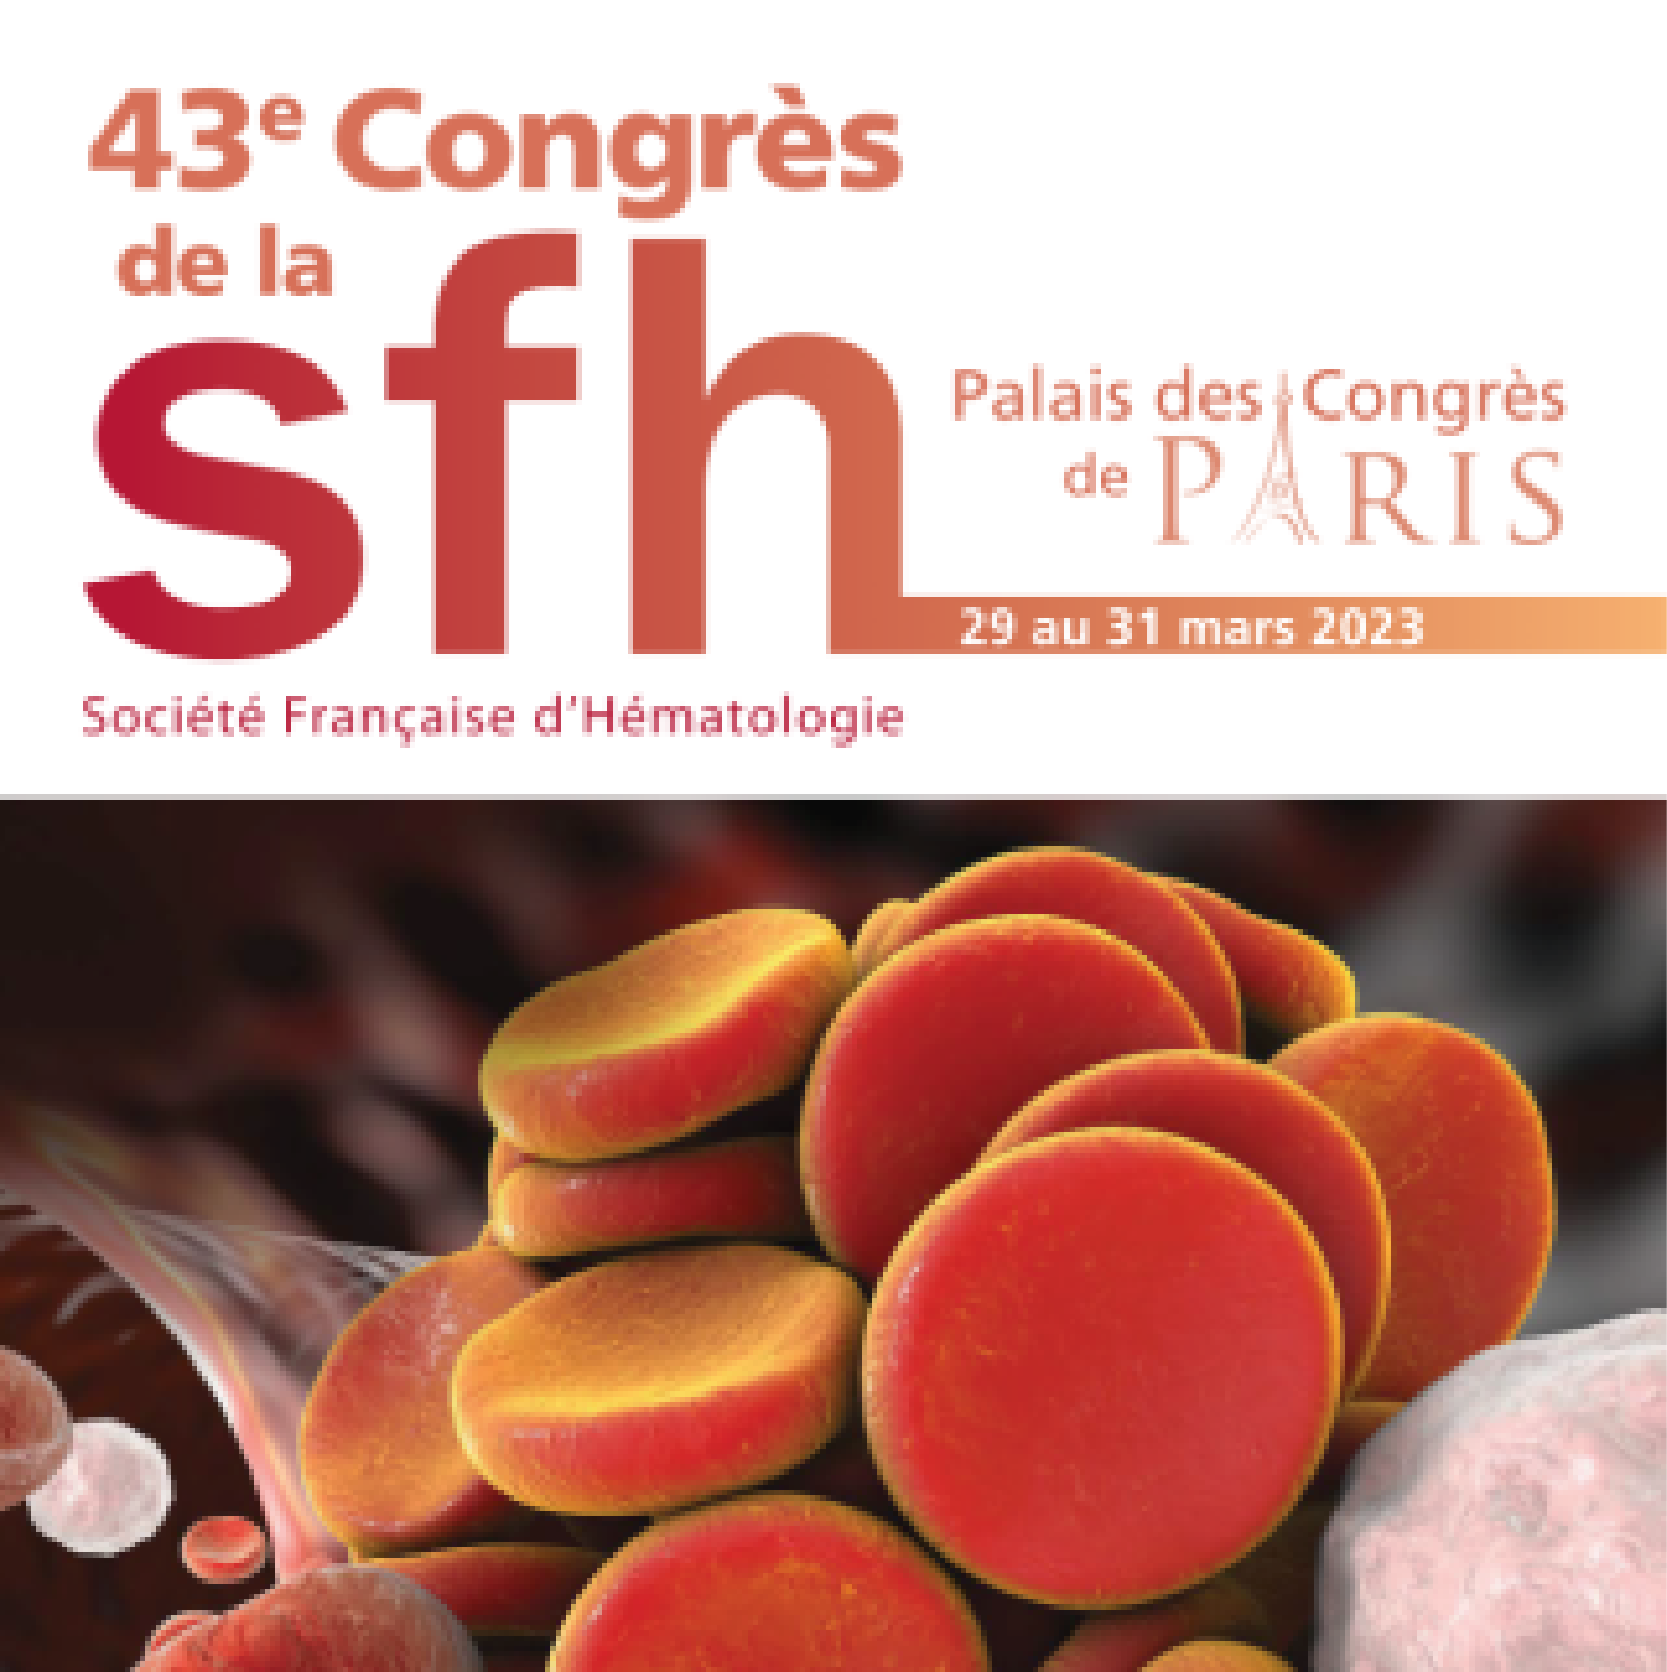 43e congrès annuel de la Société Française d’Hématologie - SFH 2023